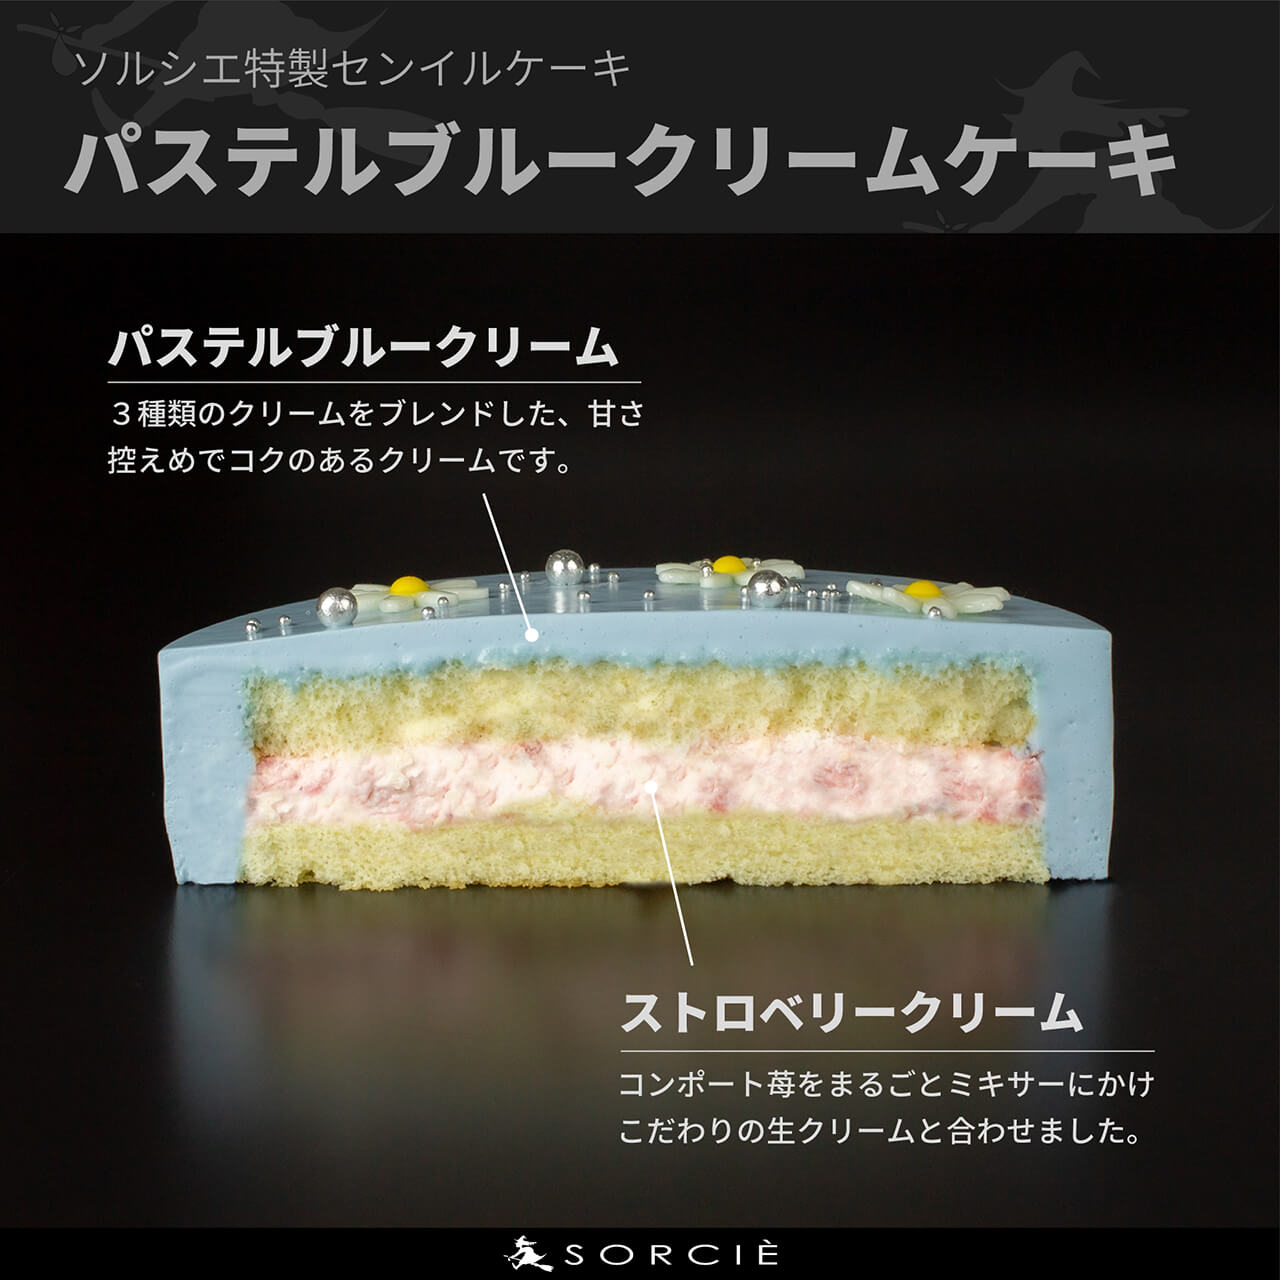 宅配】センイルケーキ 4号サイズ